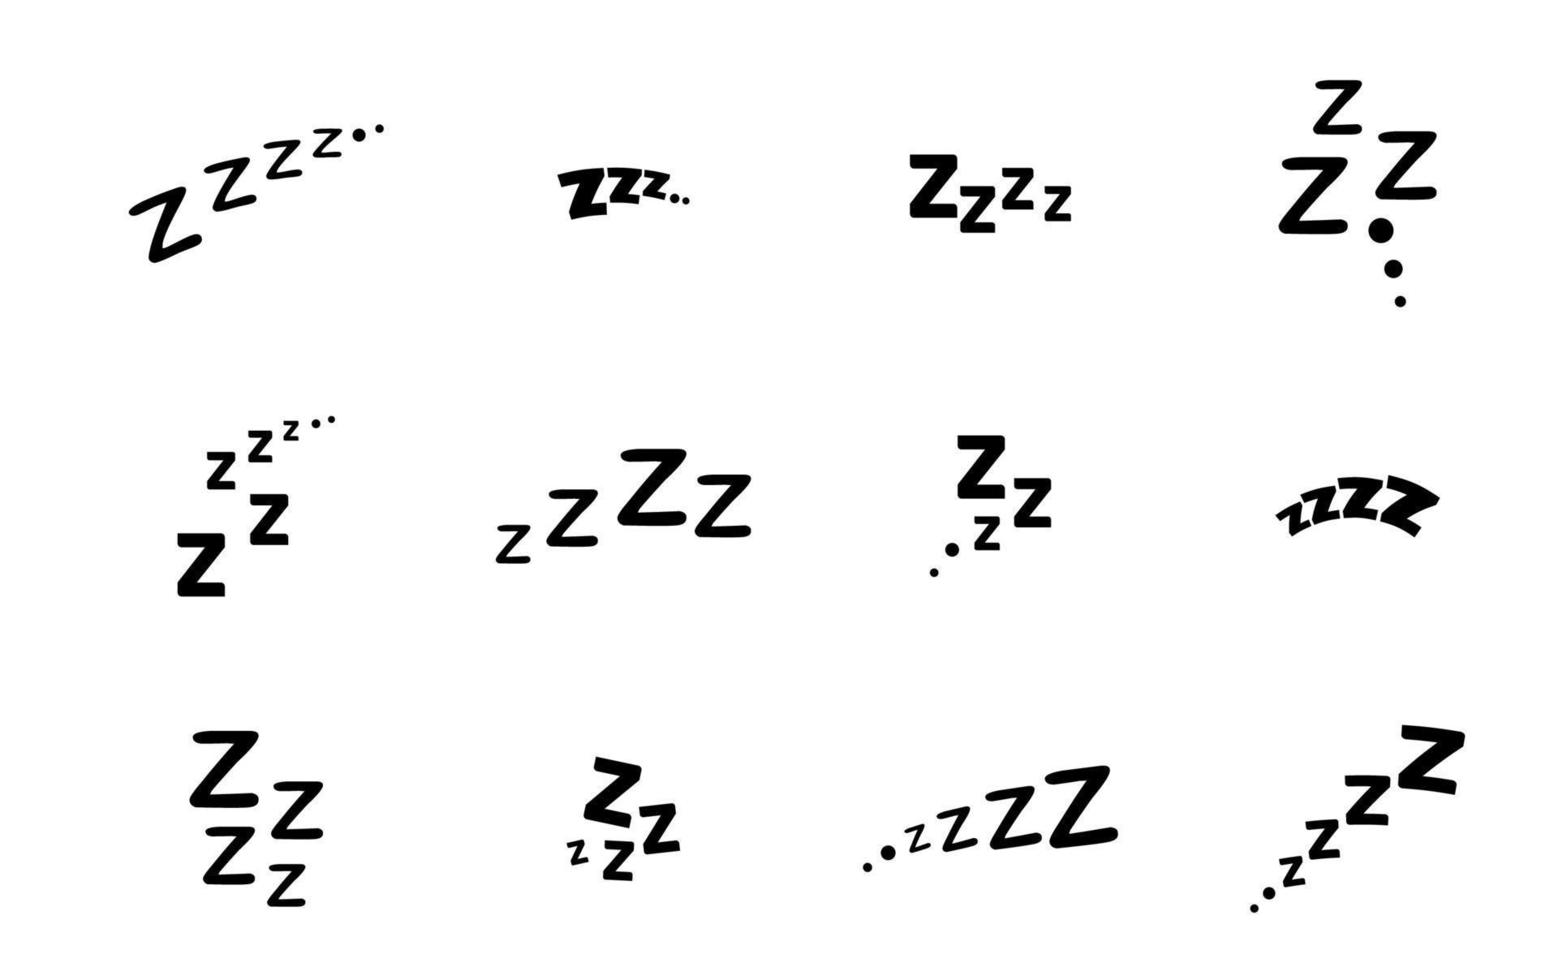 zzz zzzz cama dormir ronquido iconos, snooze siesta z sonido vector